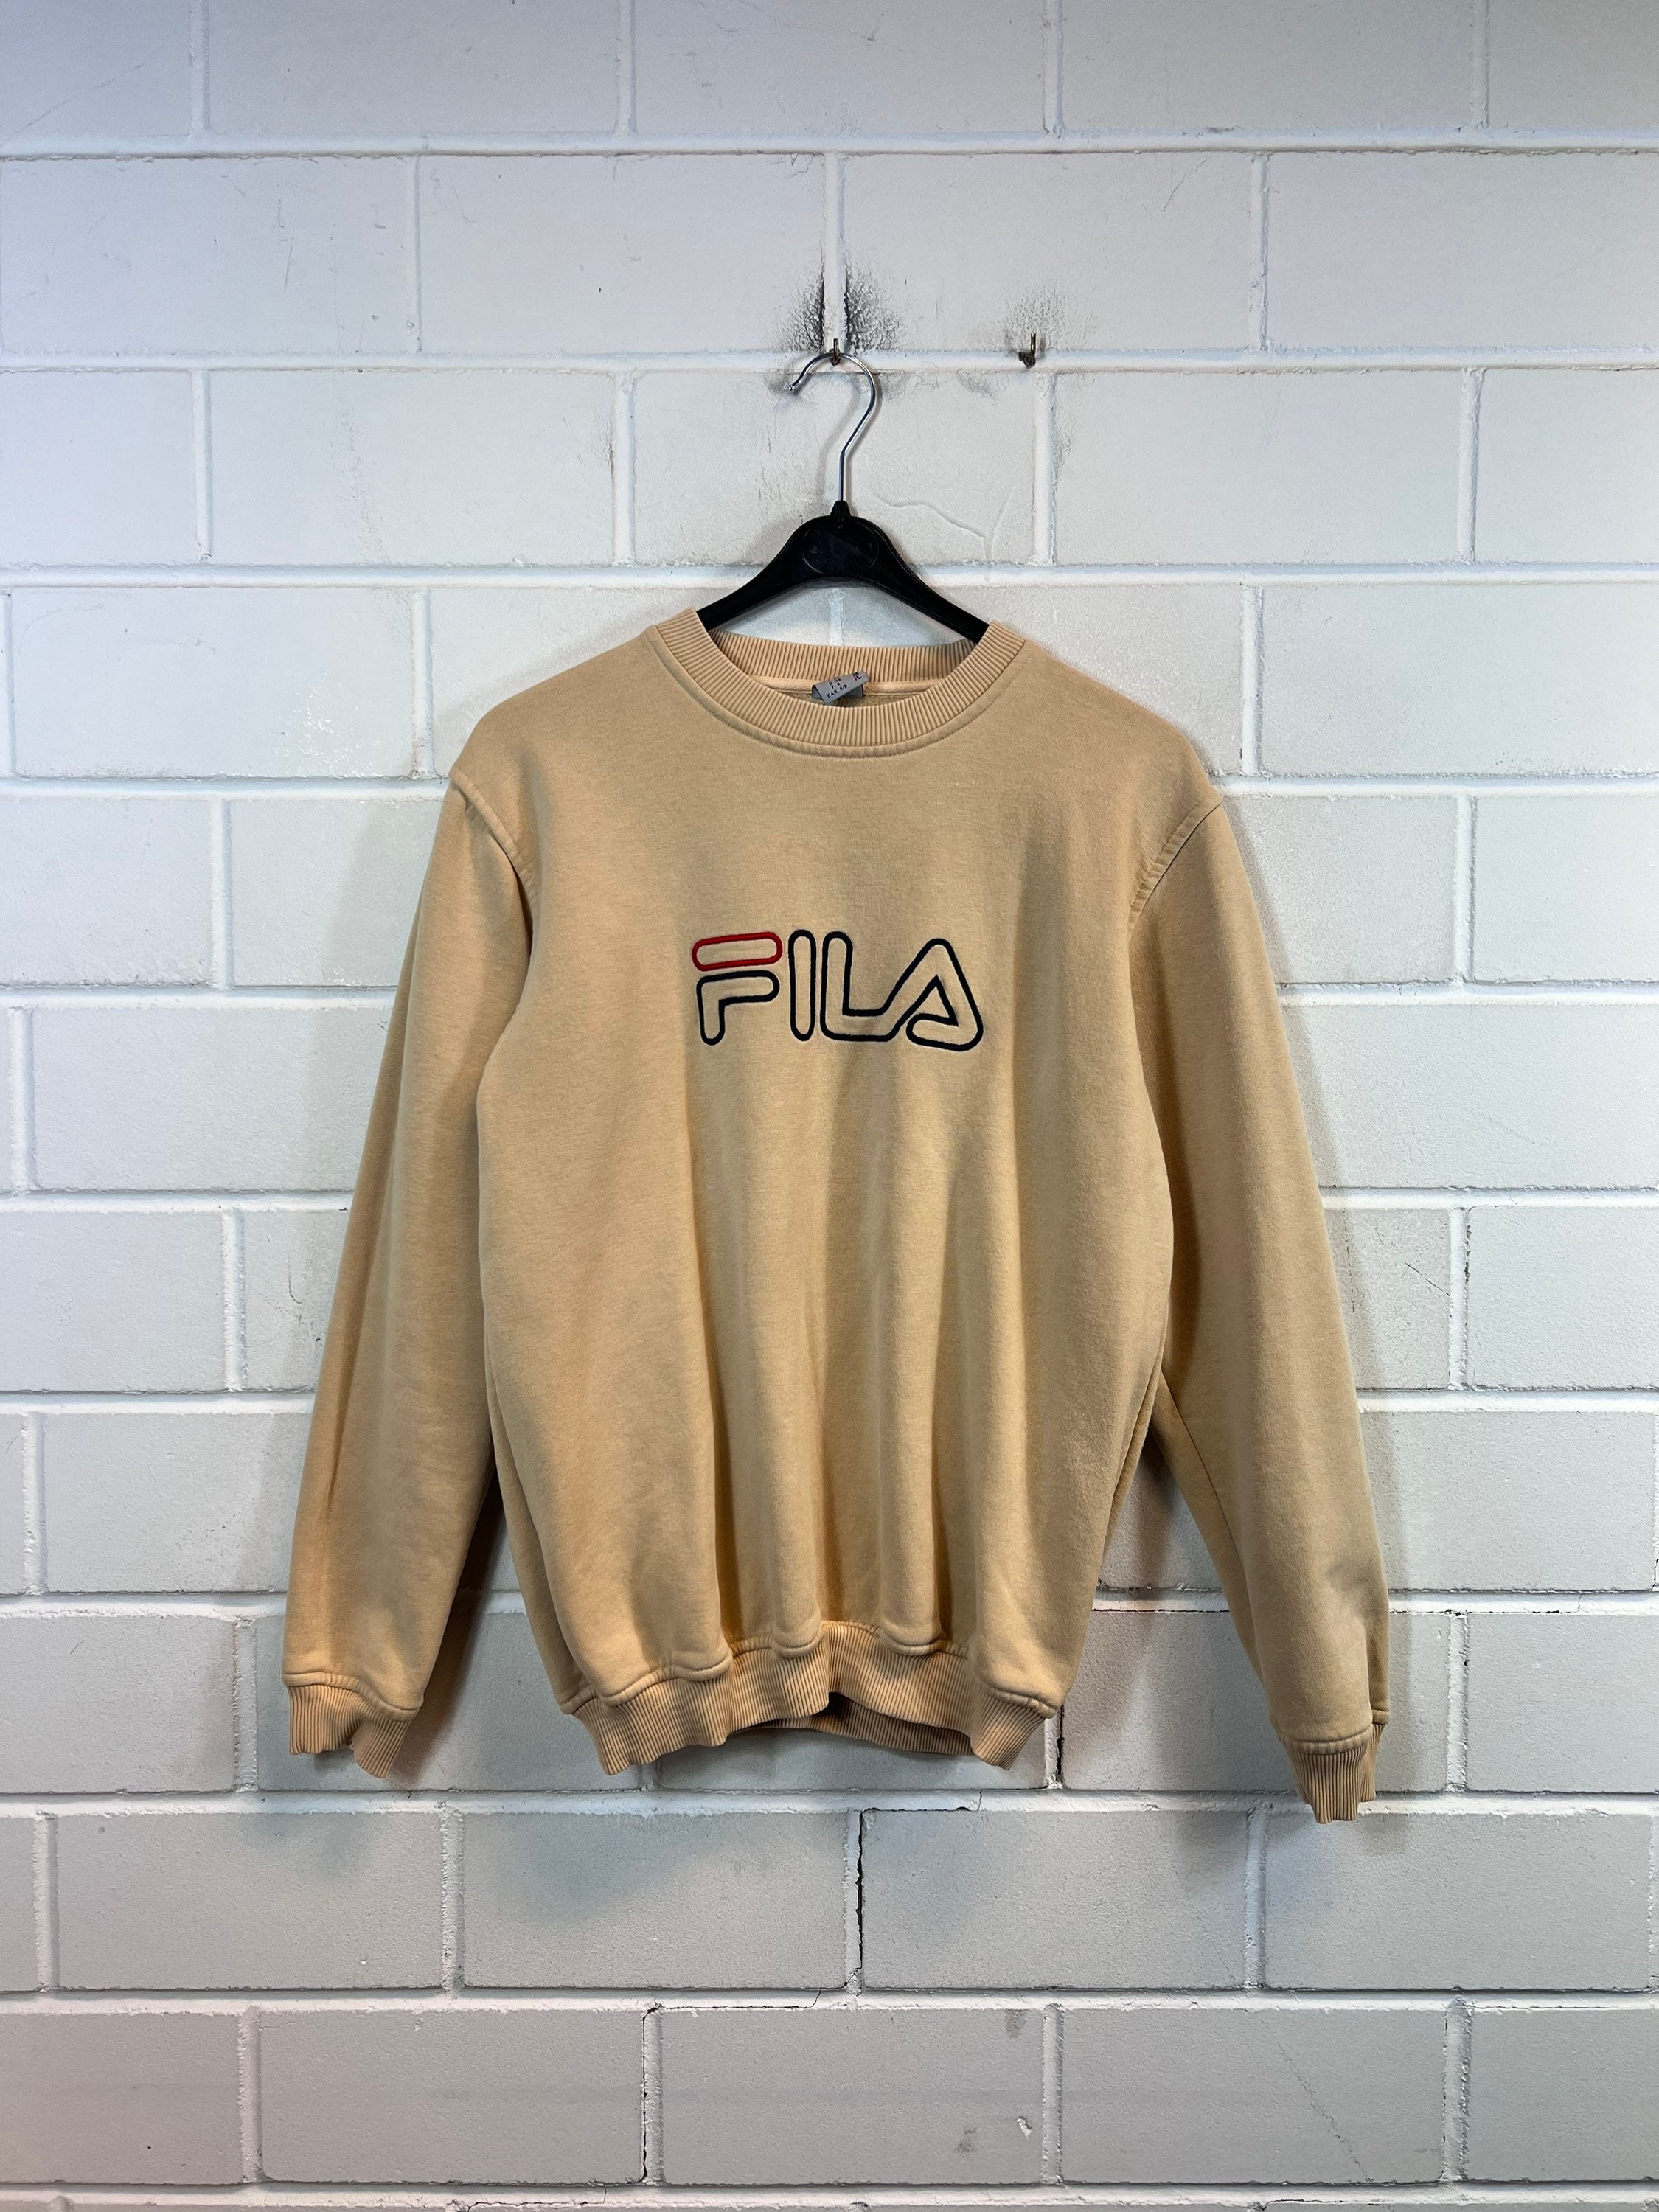 FILA S Sweatshirt Sweater Sweater 90s - Etsy